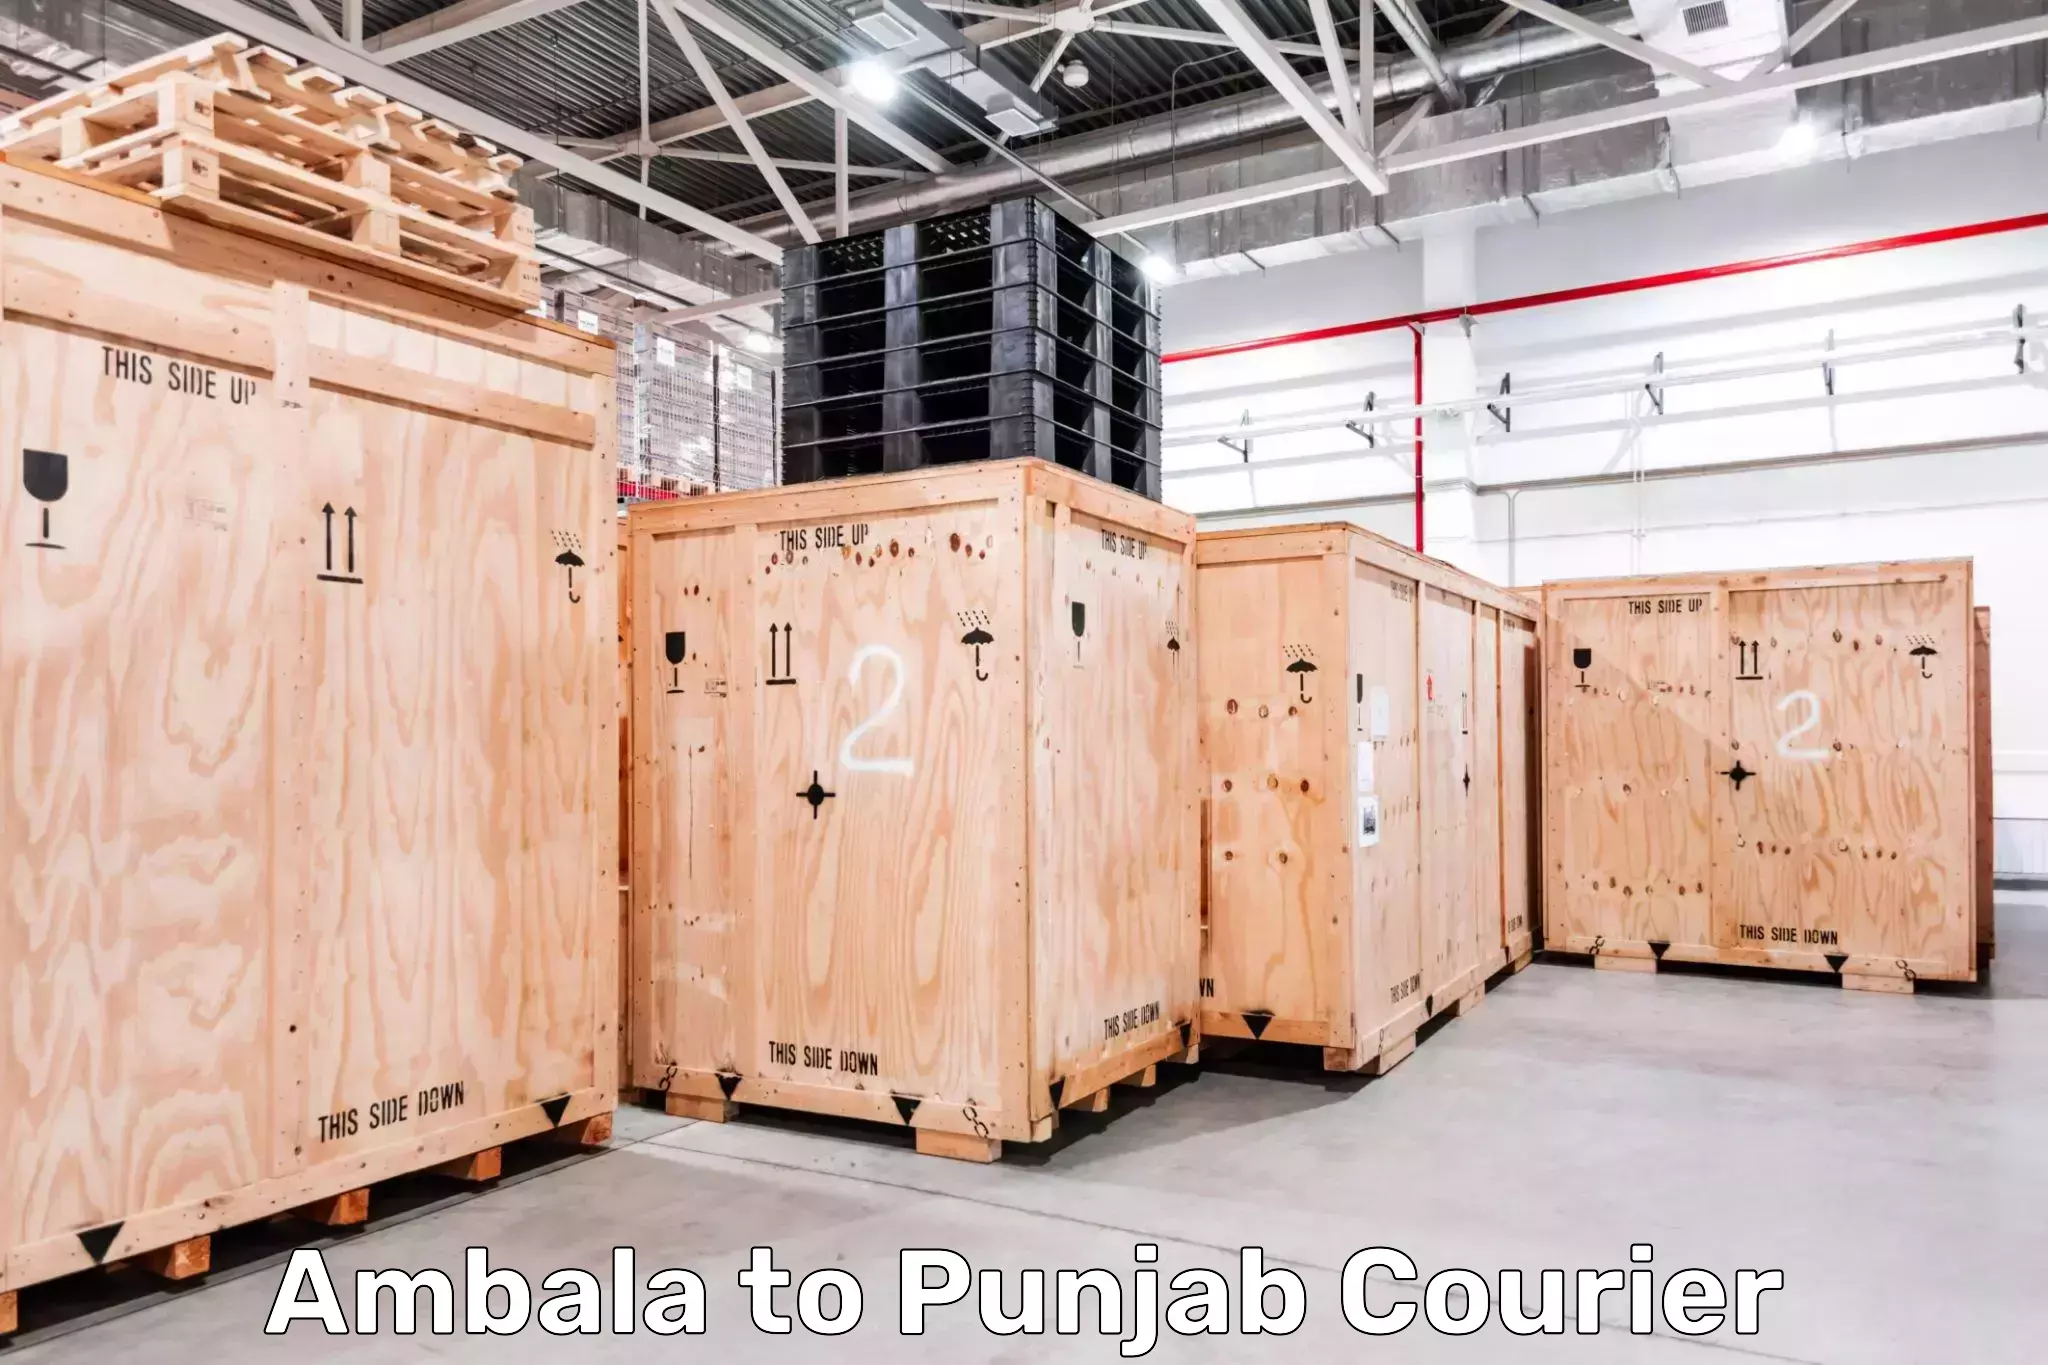 International courier networks Ambala to Bathinda